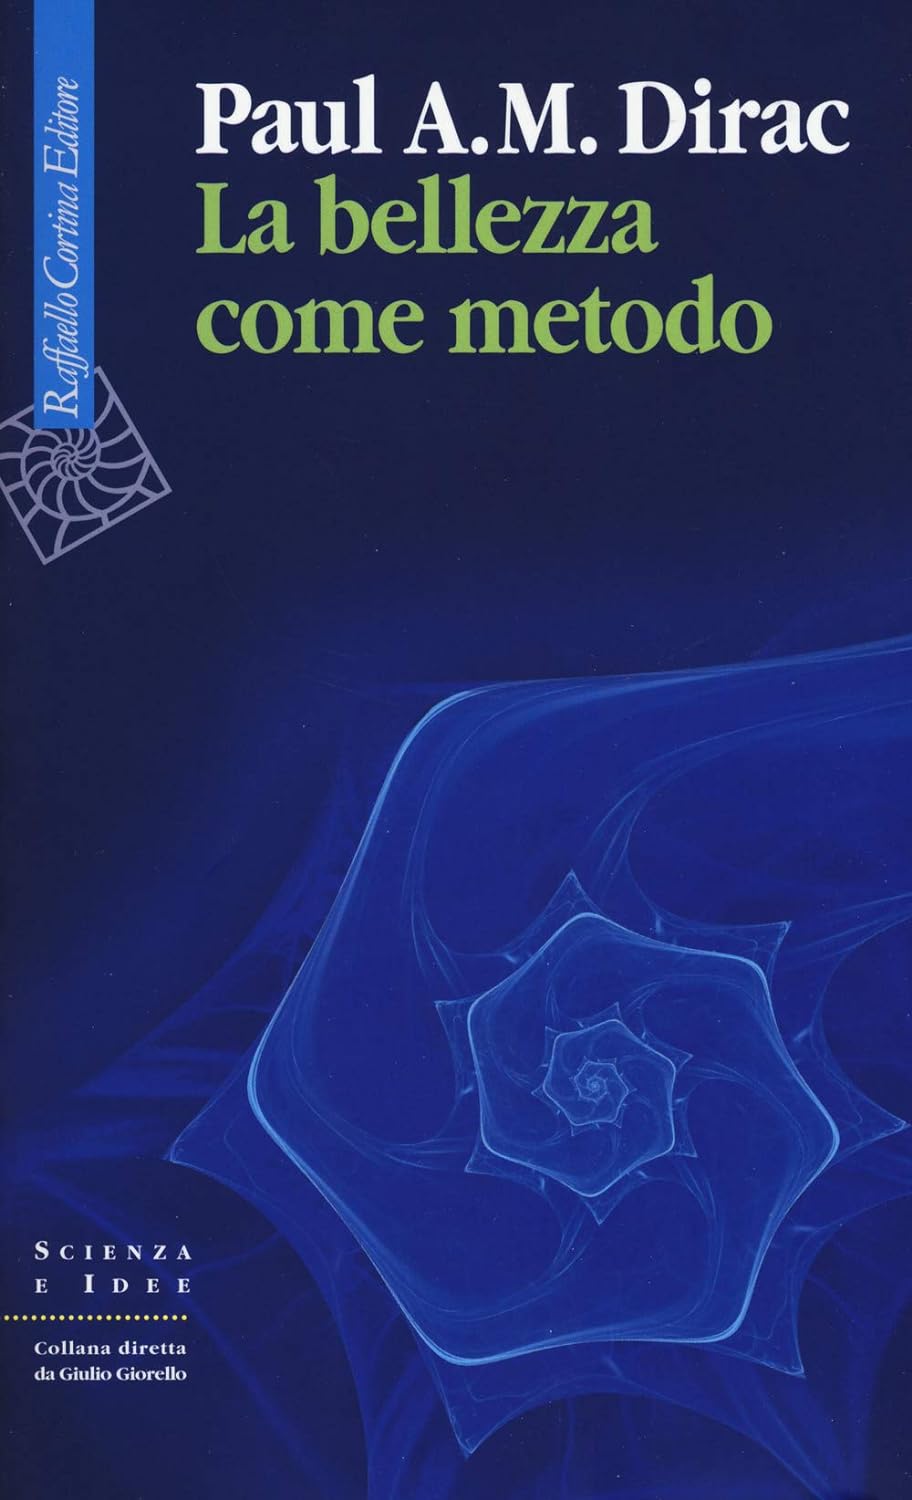 Paul A.M. Dirac: La bellezza come metodo (Italiano language, Raffaello Cortina Editore)